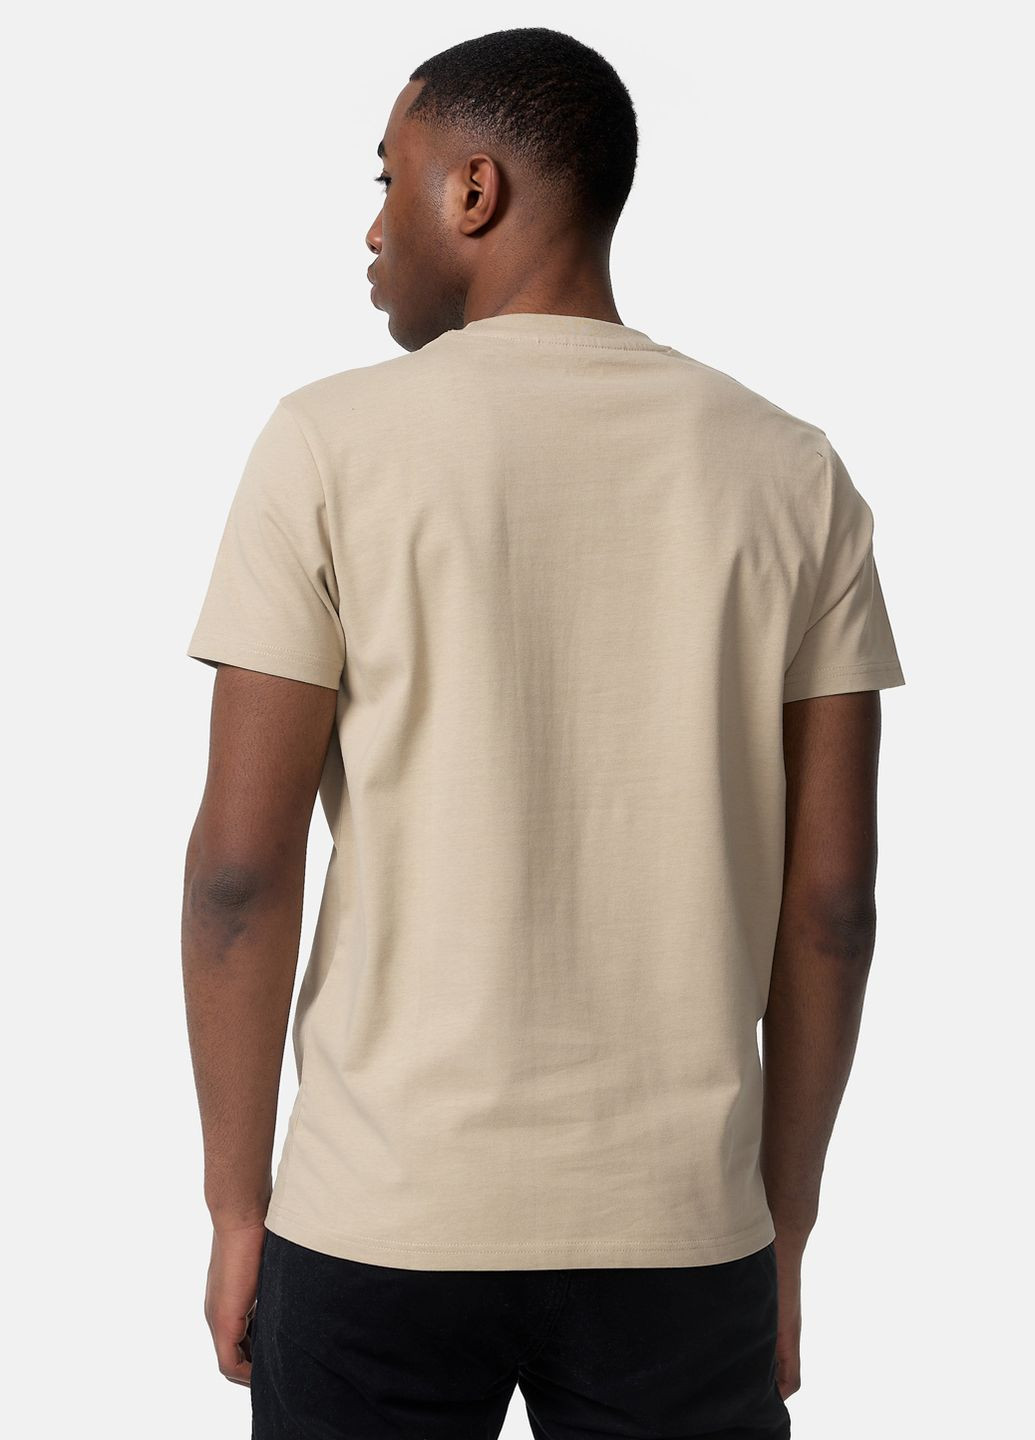 Комбинированная комплект 2 футболки Lonsdale Wrexham